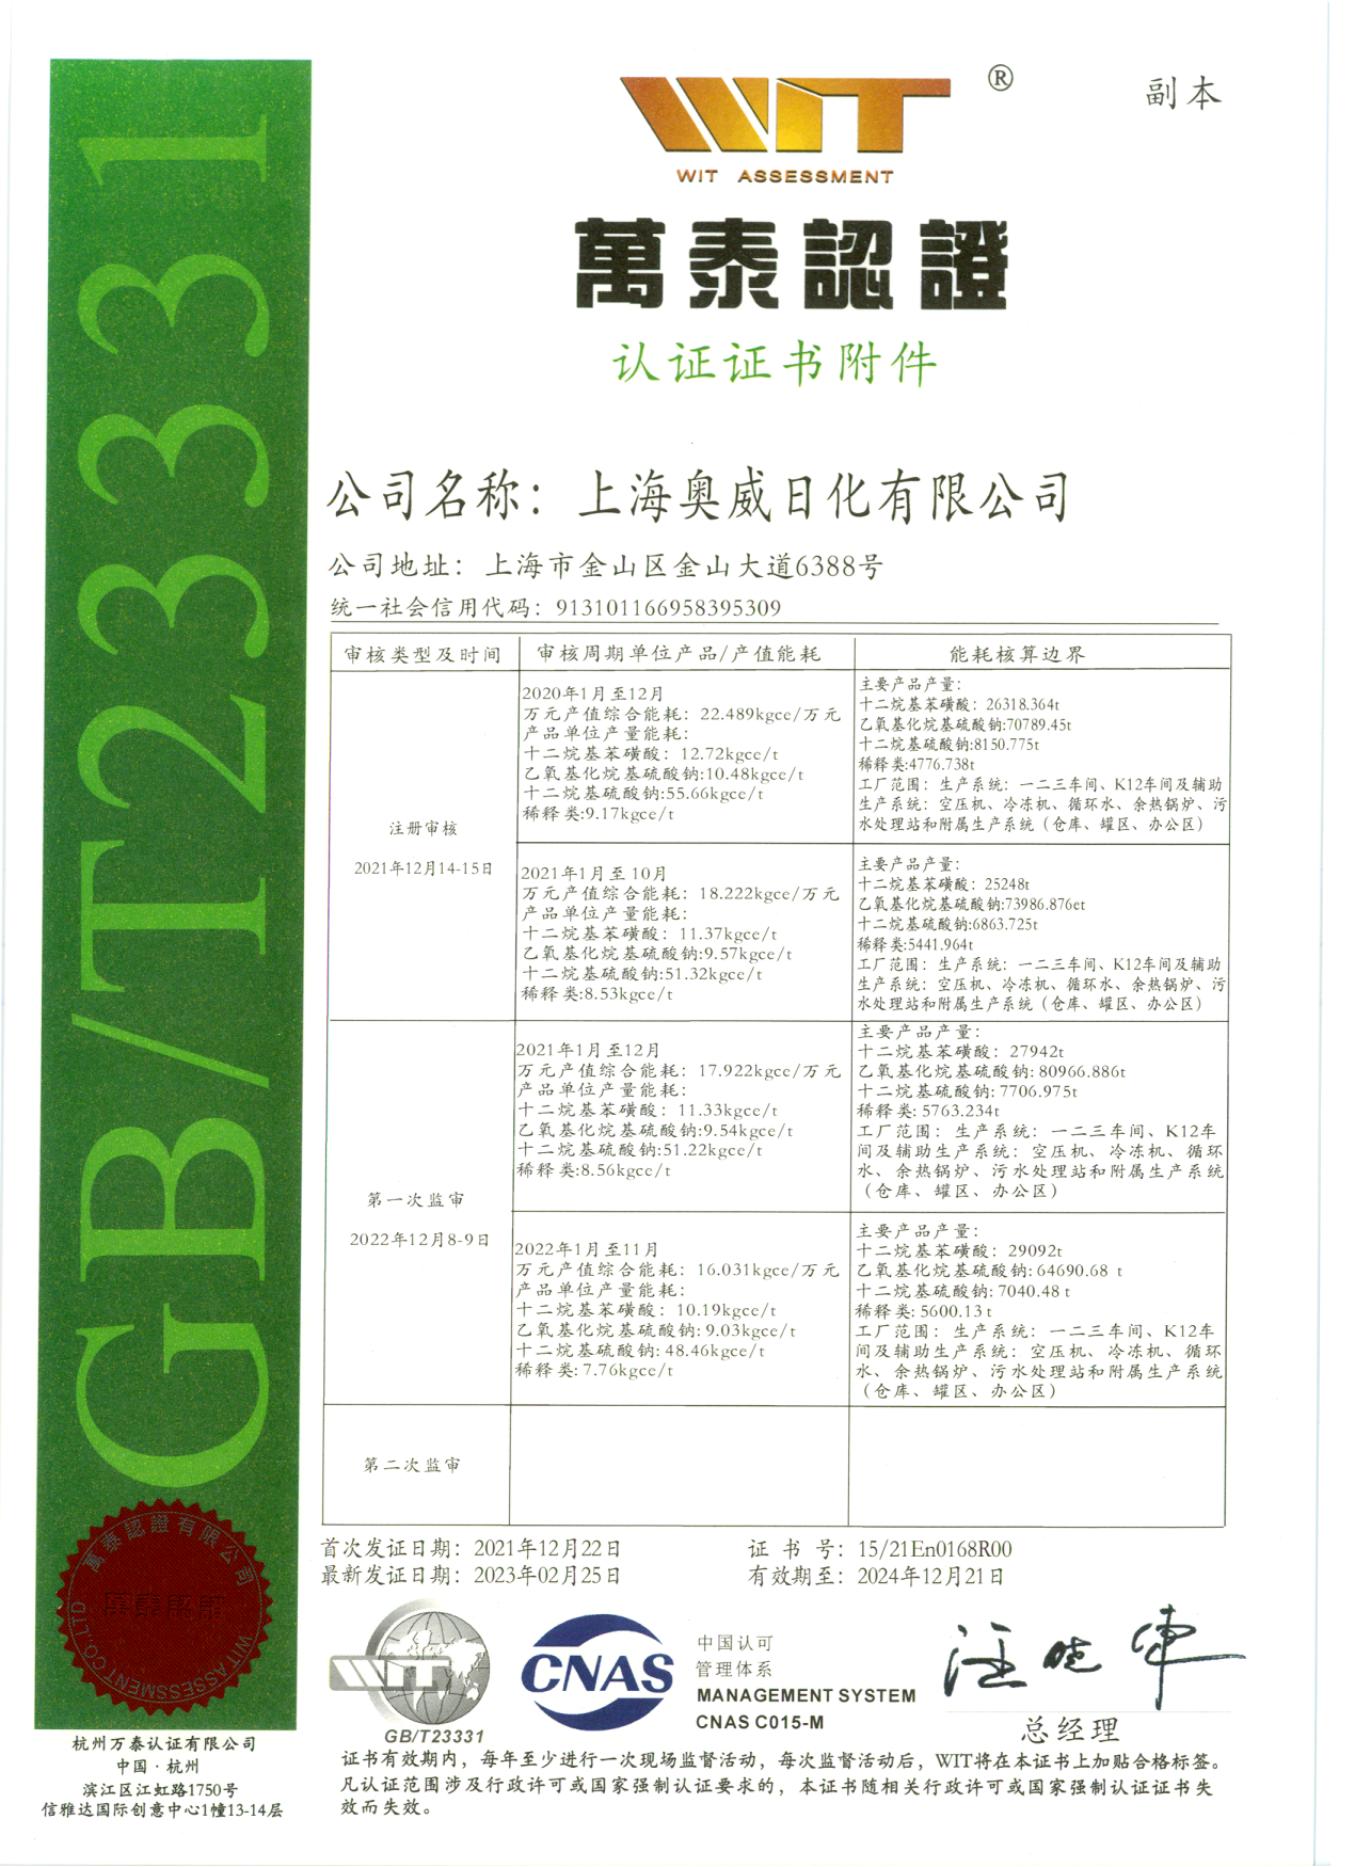 上海奥威能源管理体系认证证书